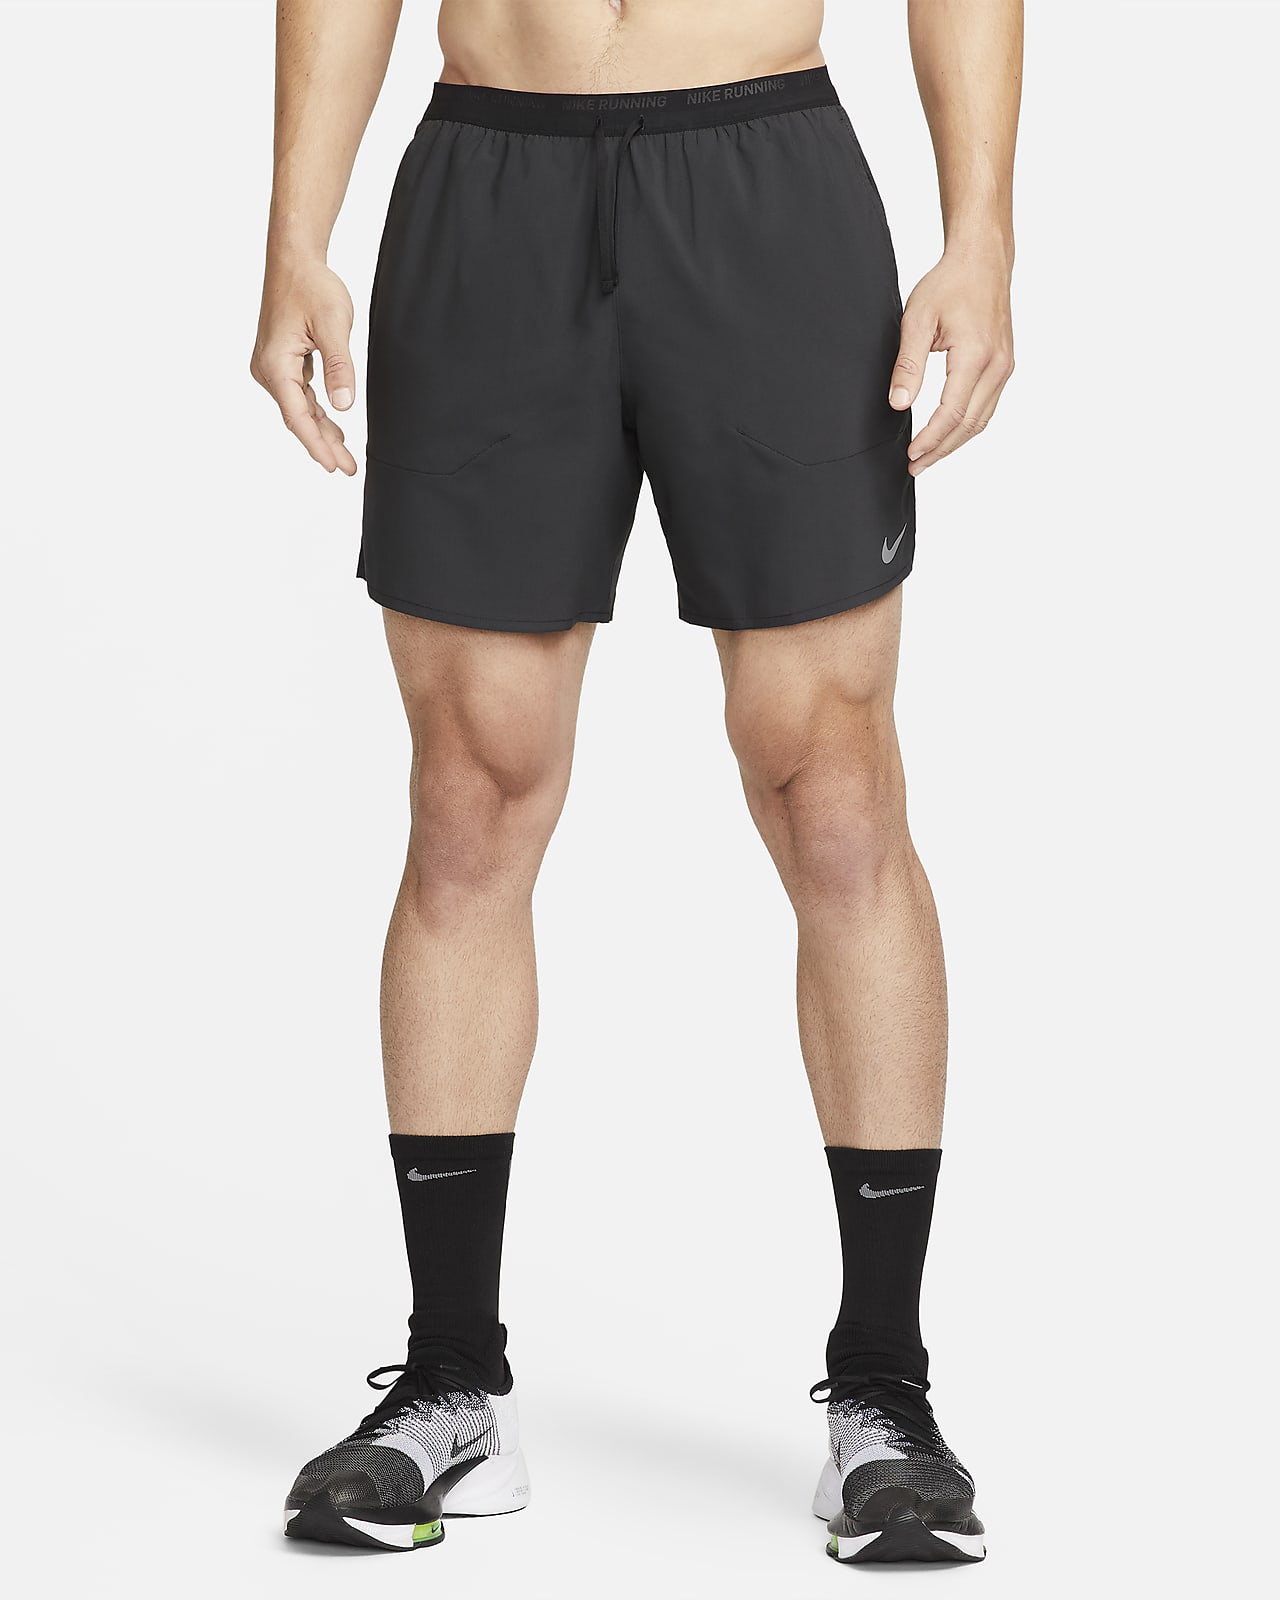 Short de running avec sous-short intégré 18 cm Dri-FIT Nike Stride pour  homme. Nike CH